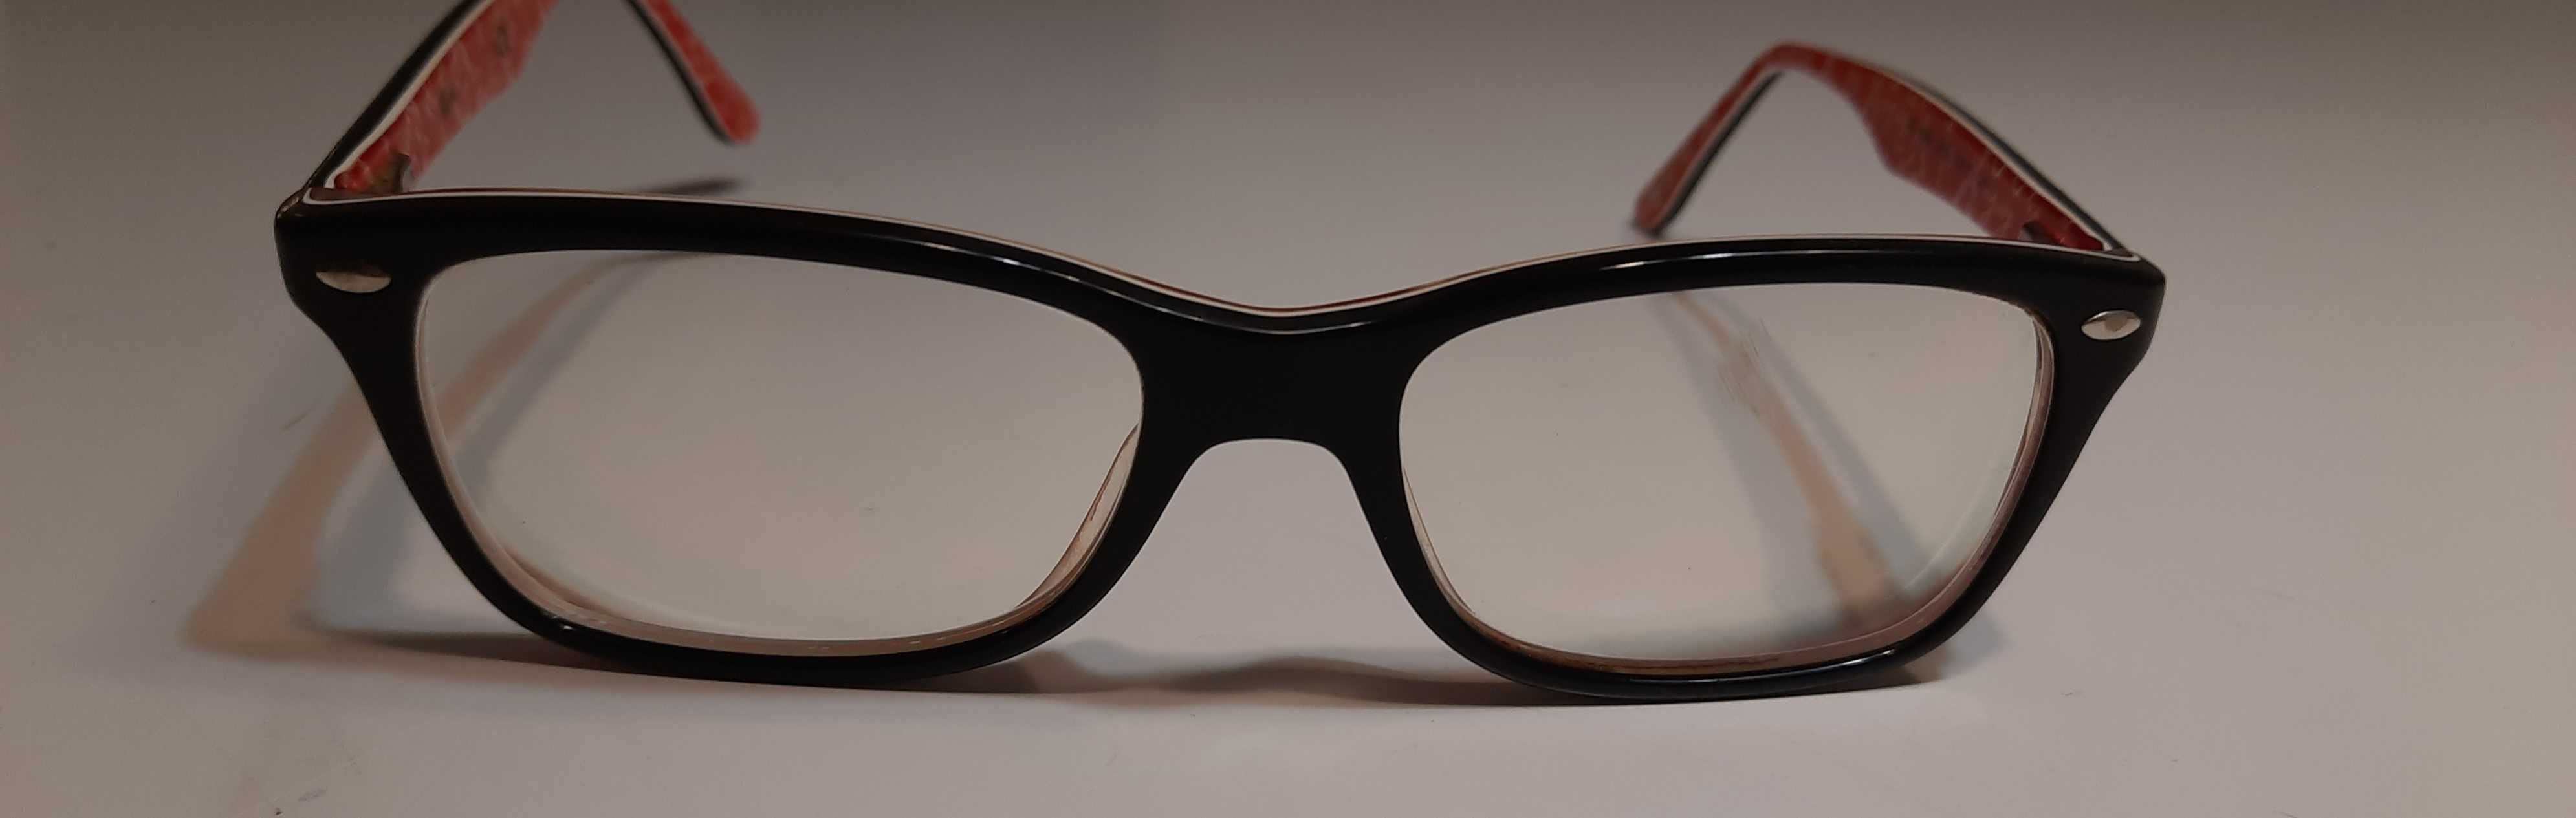 Okulary -oprawki-ray ban